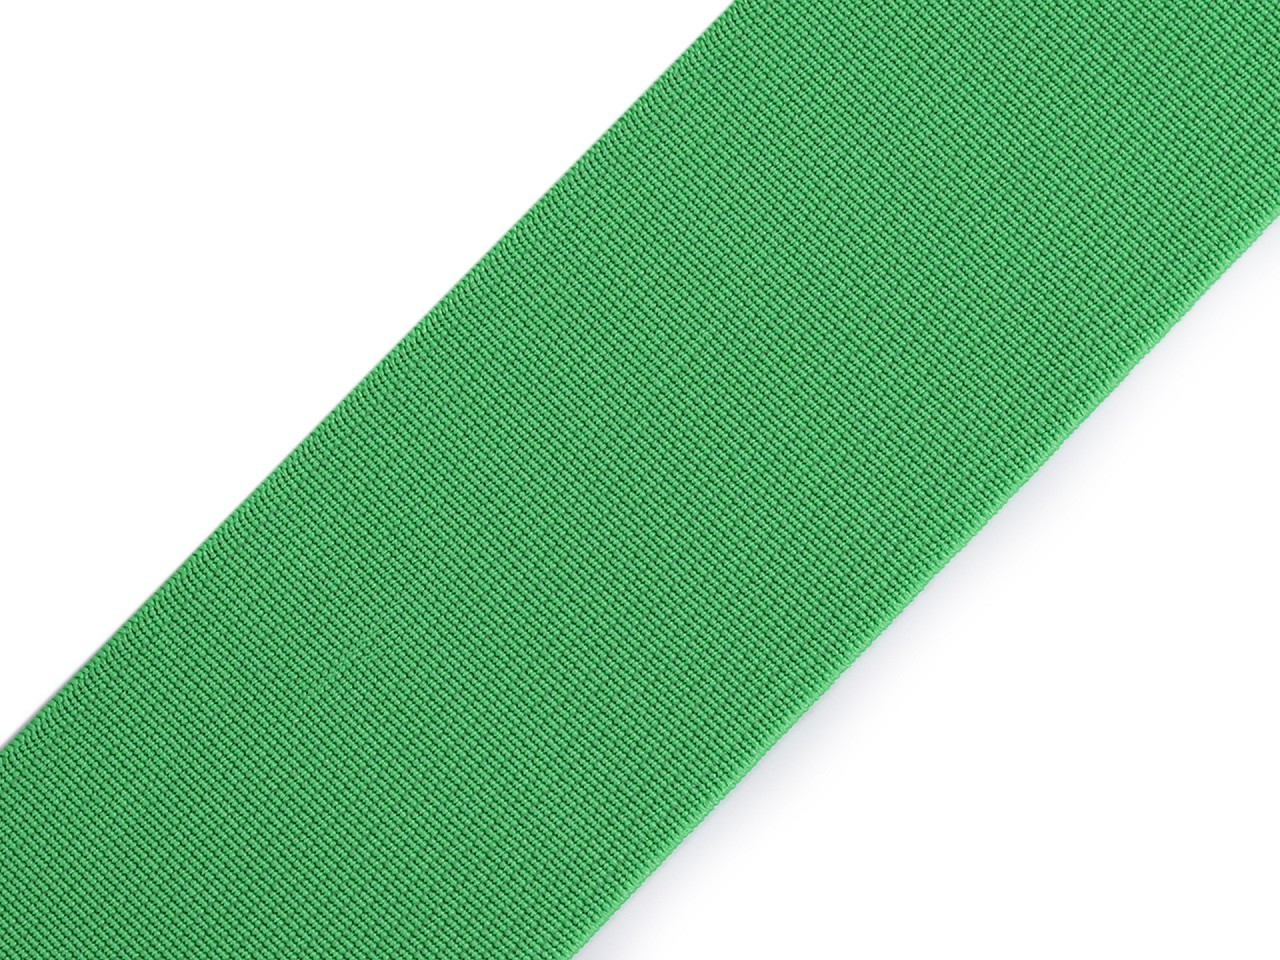 Pruženka hladká šíře 50 mm tkaná barevná, barva 4859 zelená